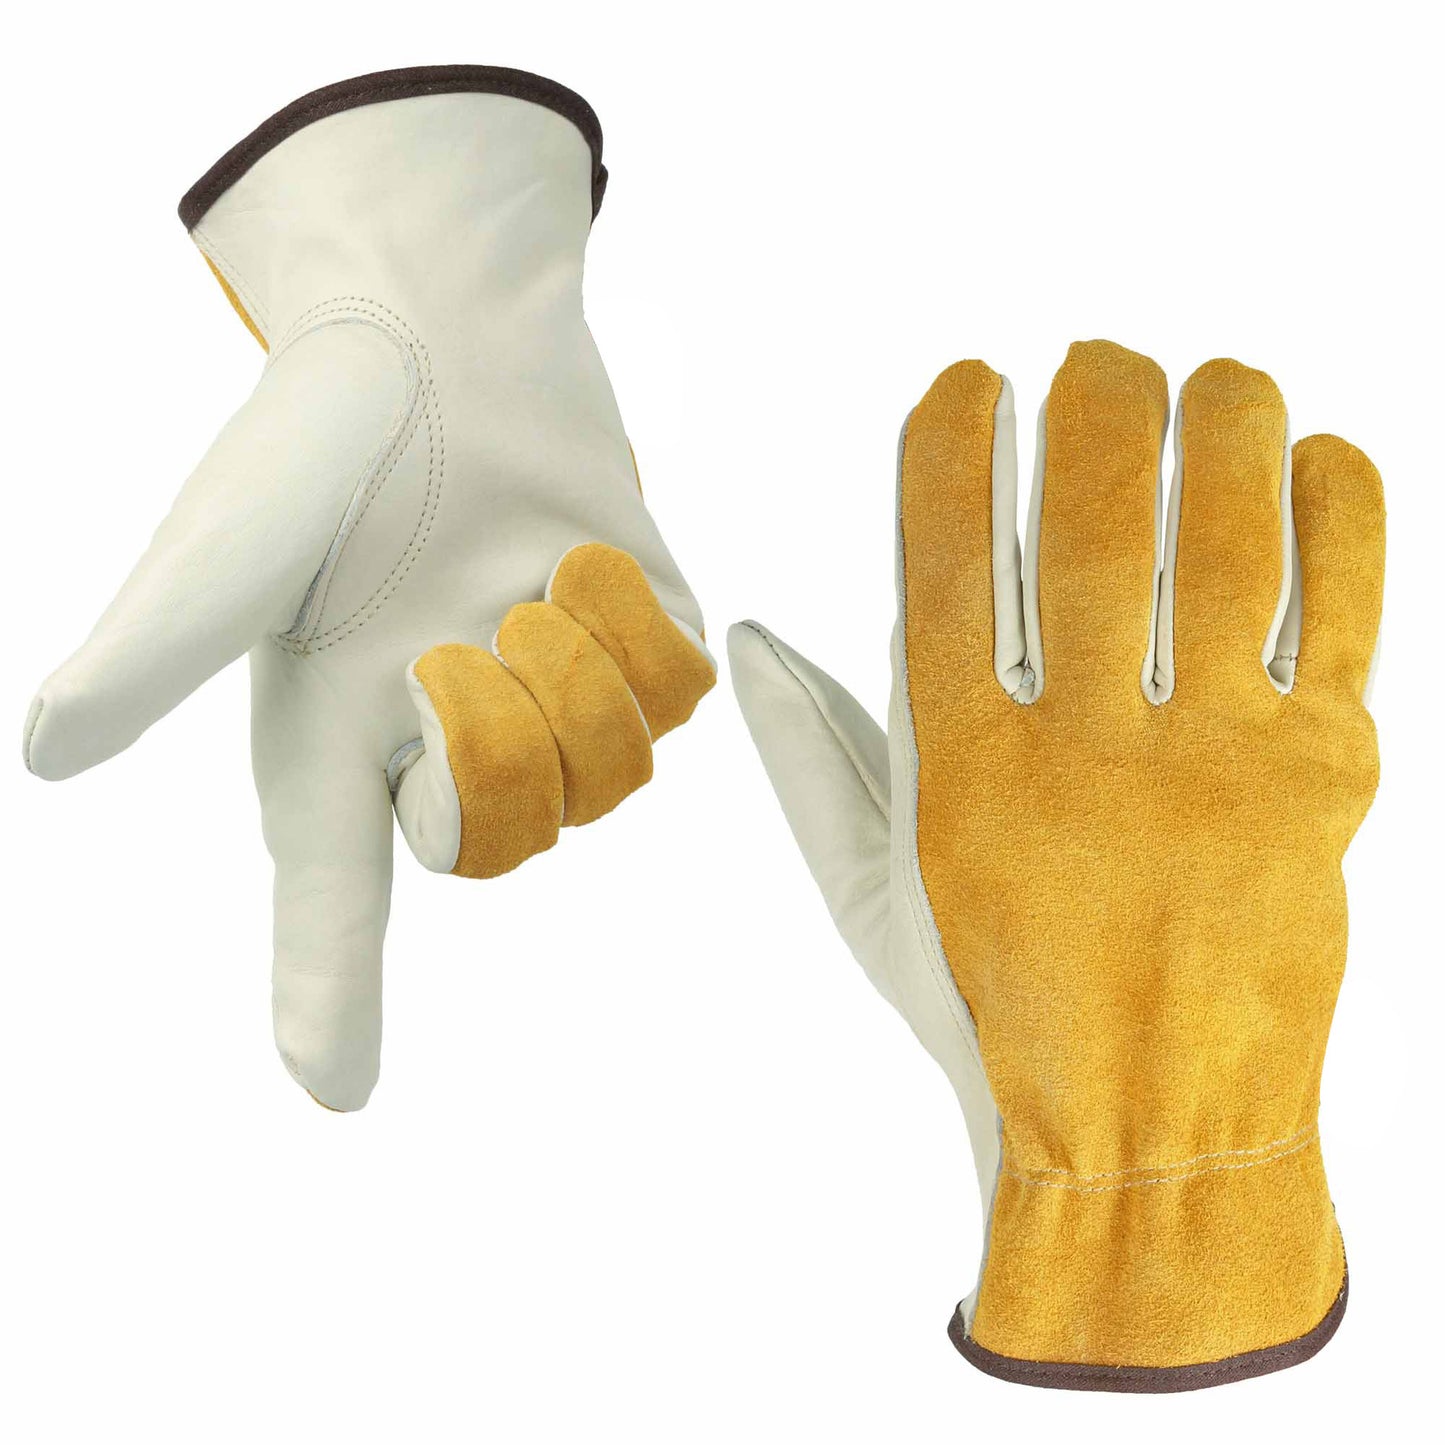 Gardening work labor insurance gloves